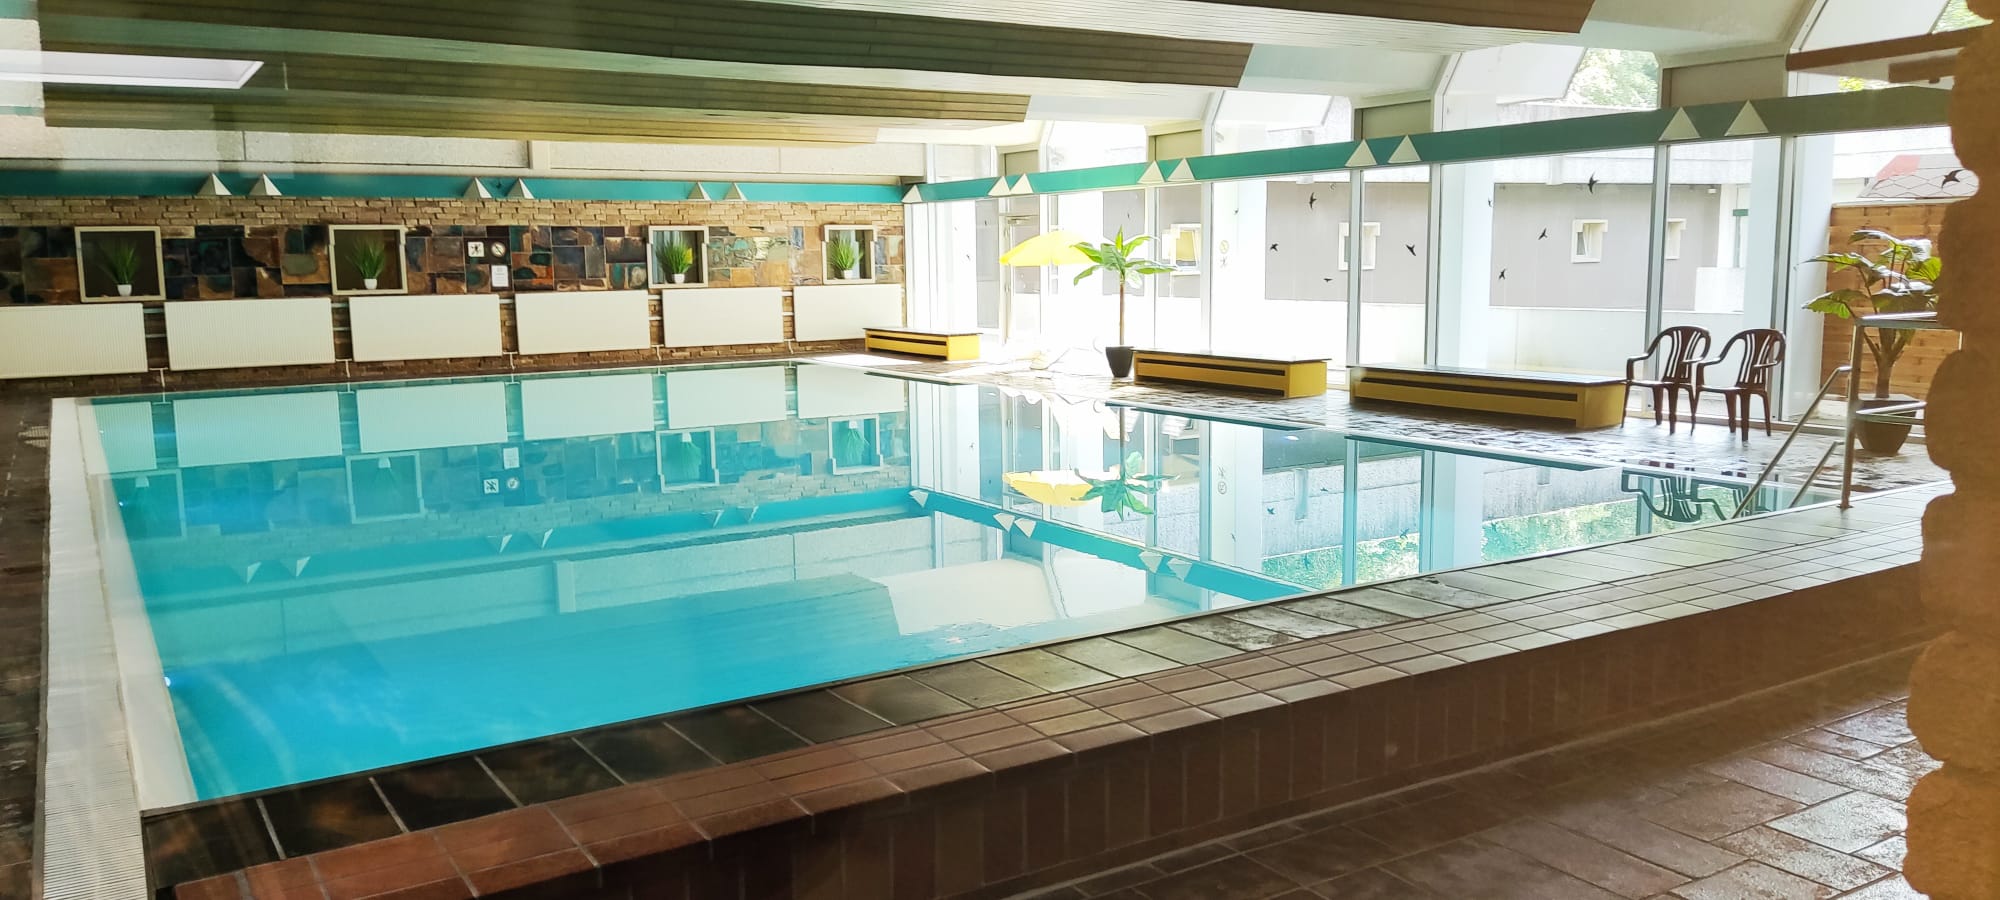 Ein besonderes Highlight: Das Schwimmbad im Haus kann kostenfrei genutzt werden...(Bild: Fam. Benze)